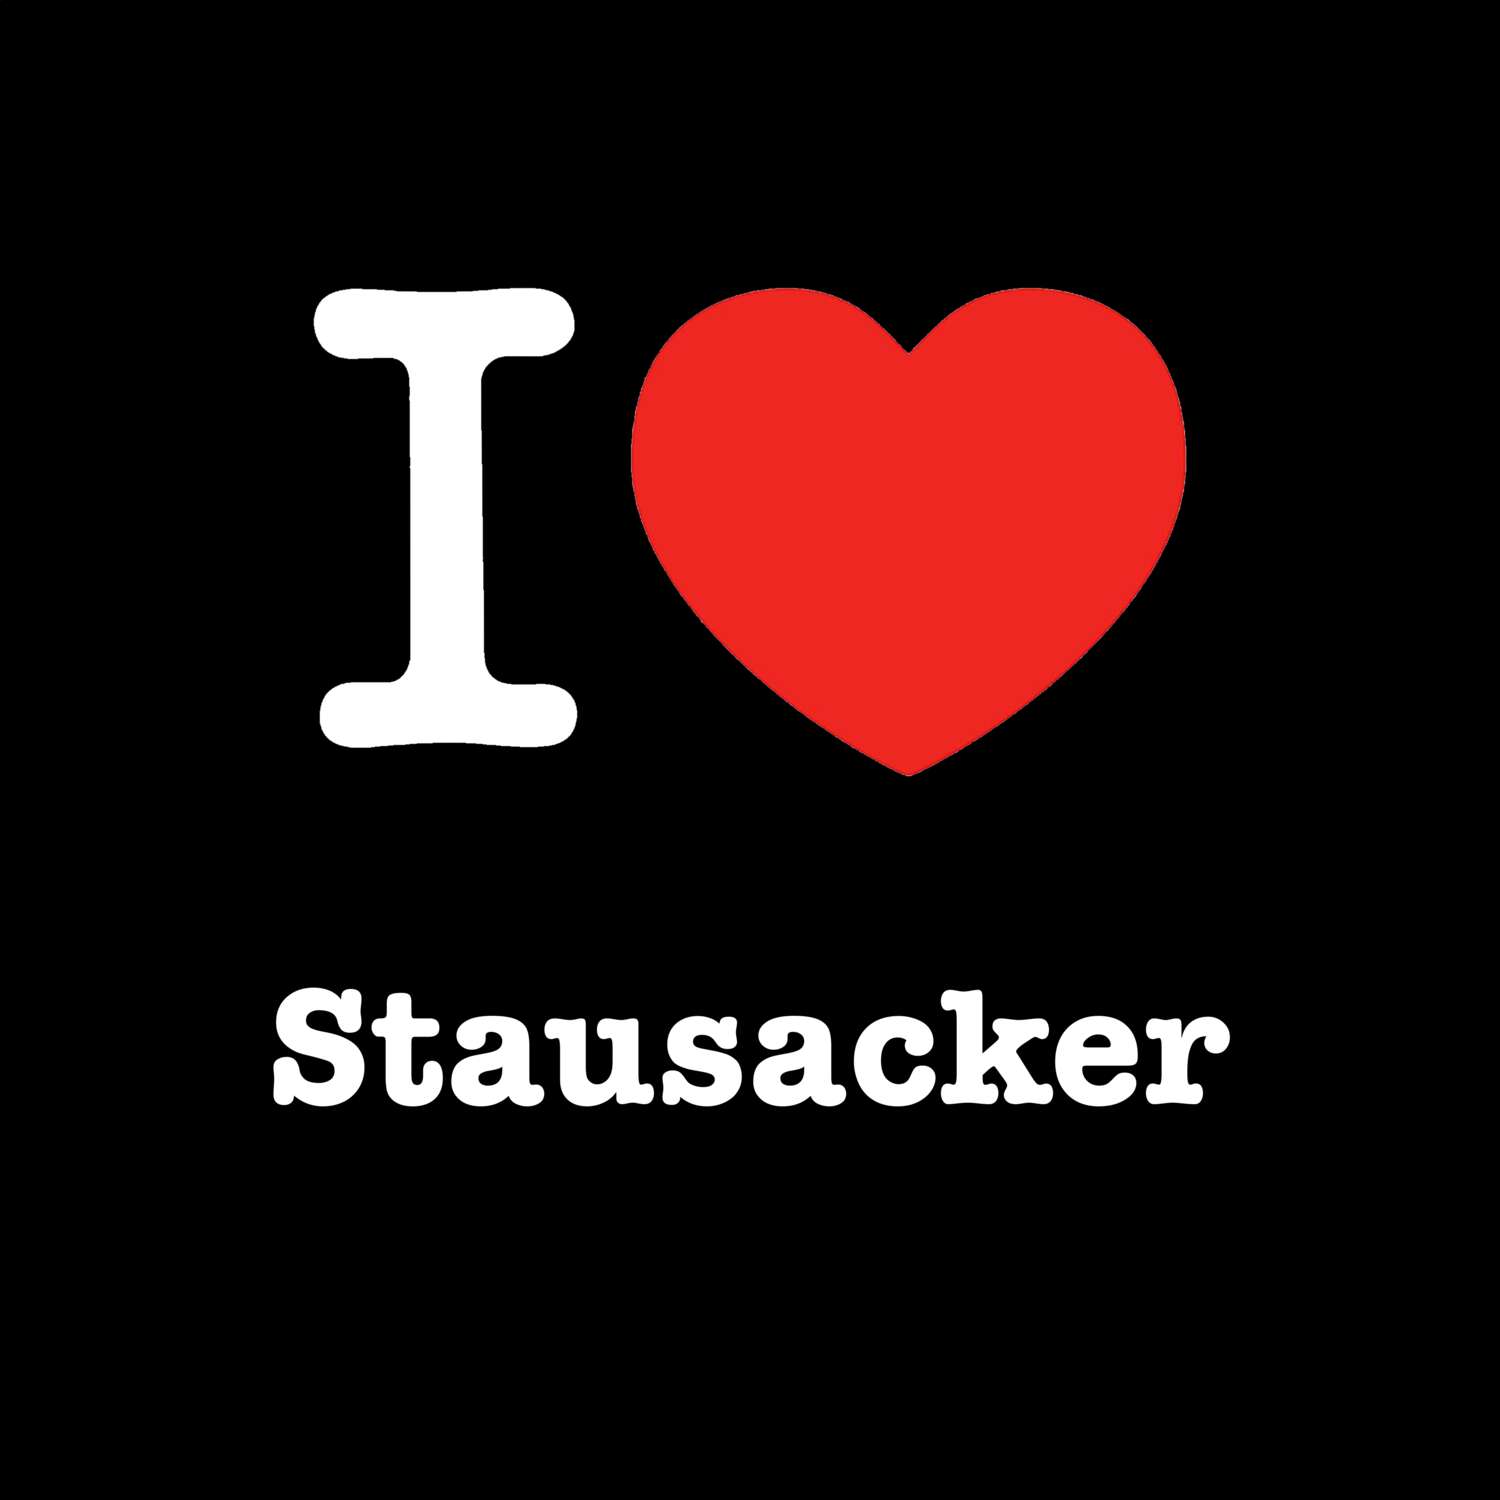 Stausacker T-Shirt »I love«